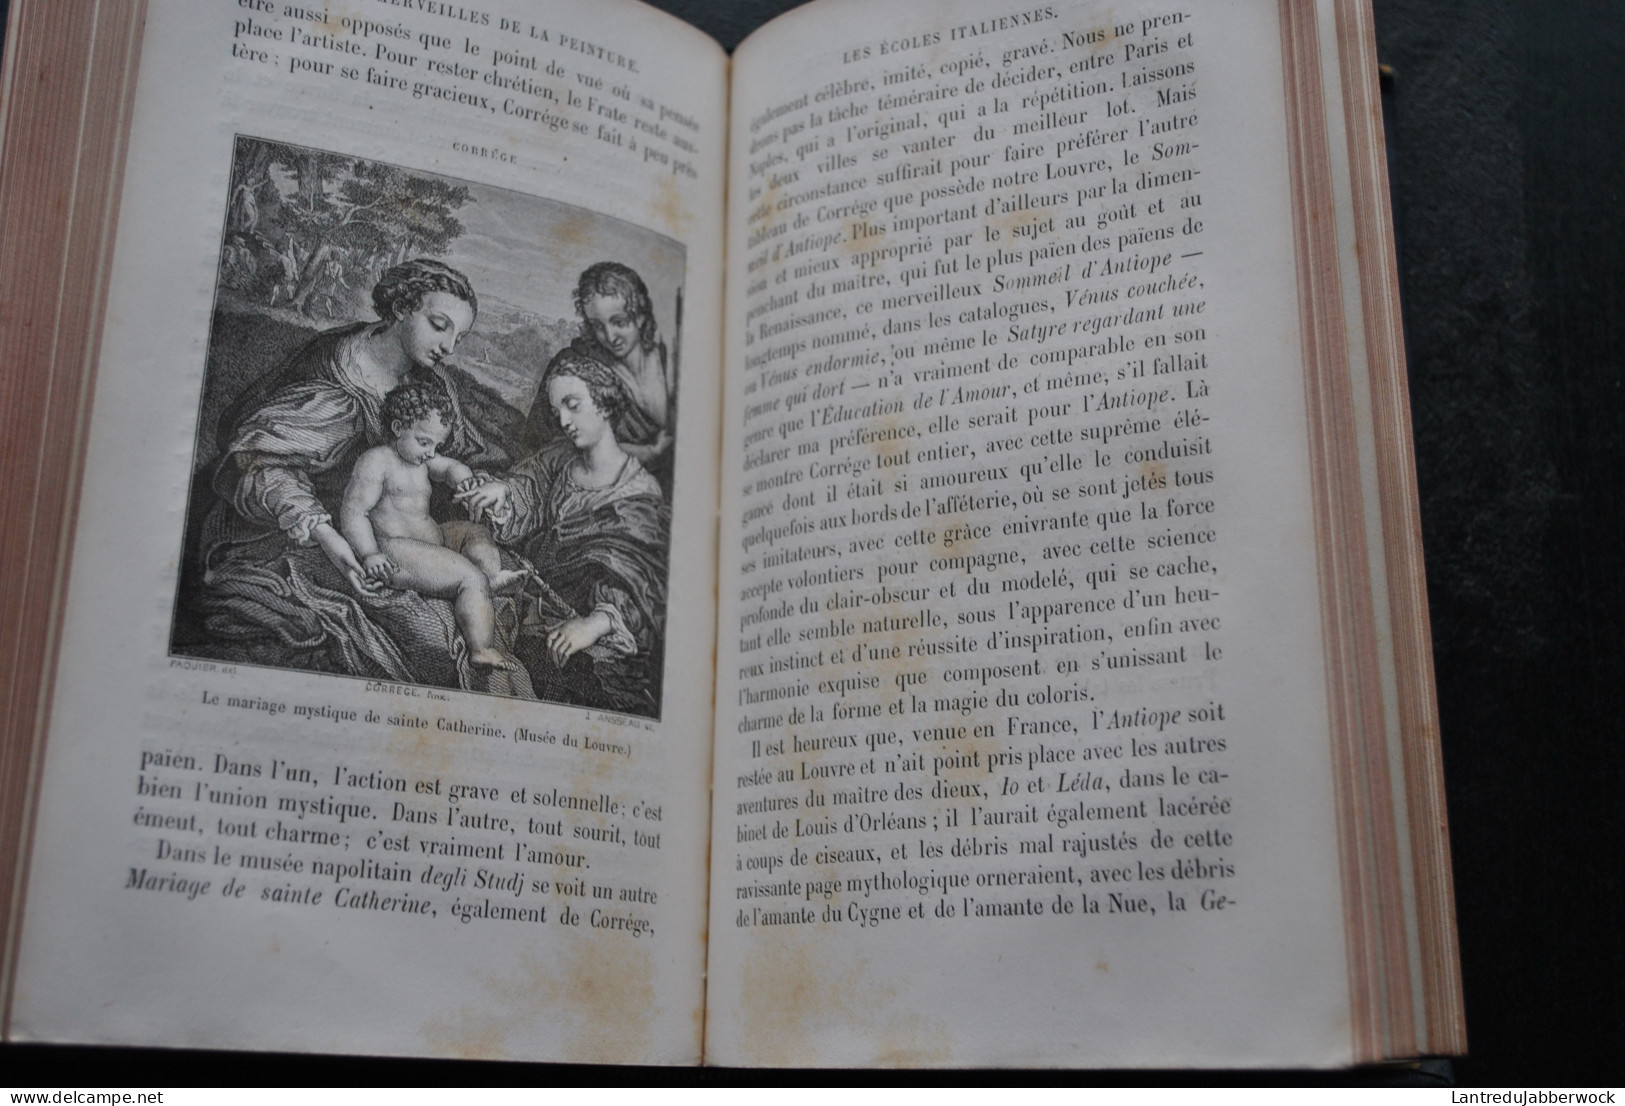 Louis VIARDOT LES MERVEILLES DE LA PEINTURE COMPLET 2 TOMES 1869 & 1870 - Hachette bibliothèque des merveilles Reliure